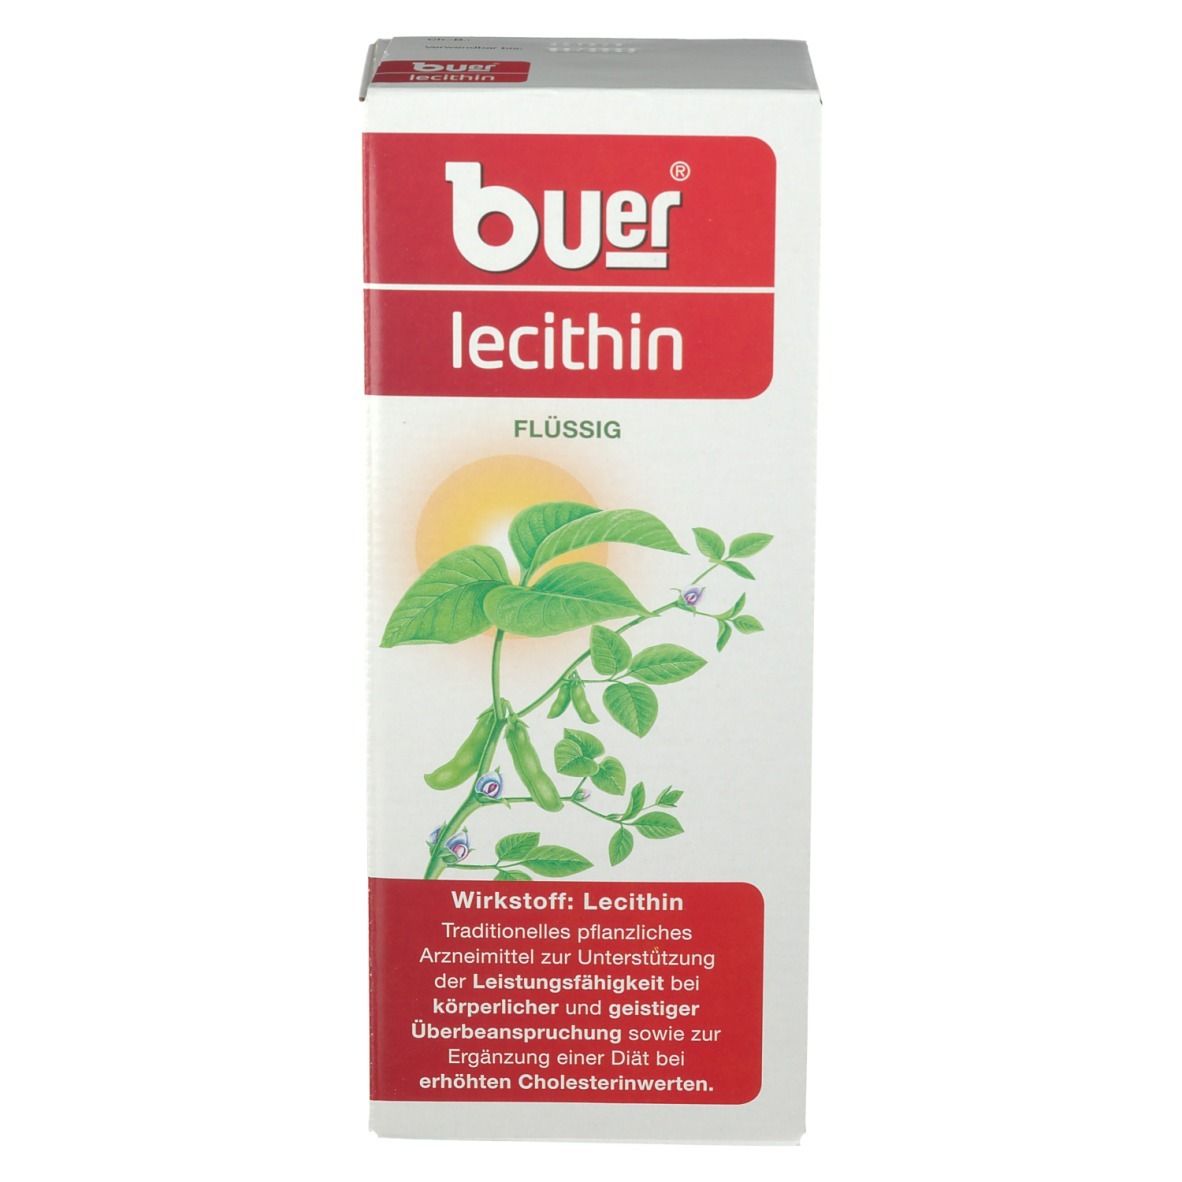 Buer® lecithin